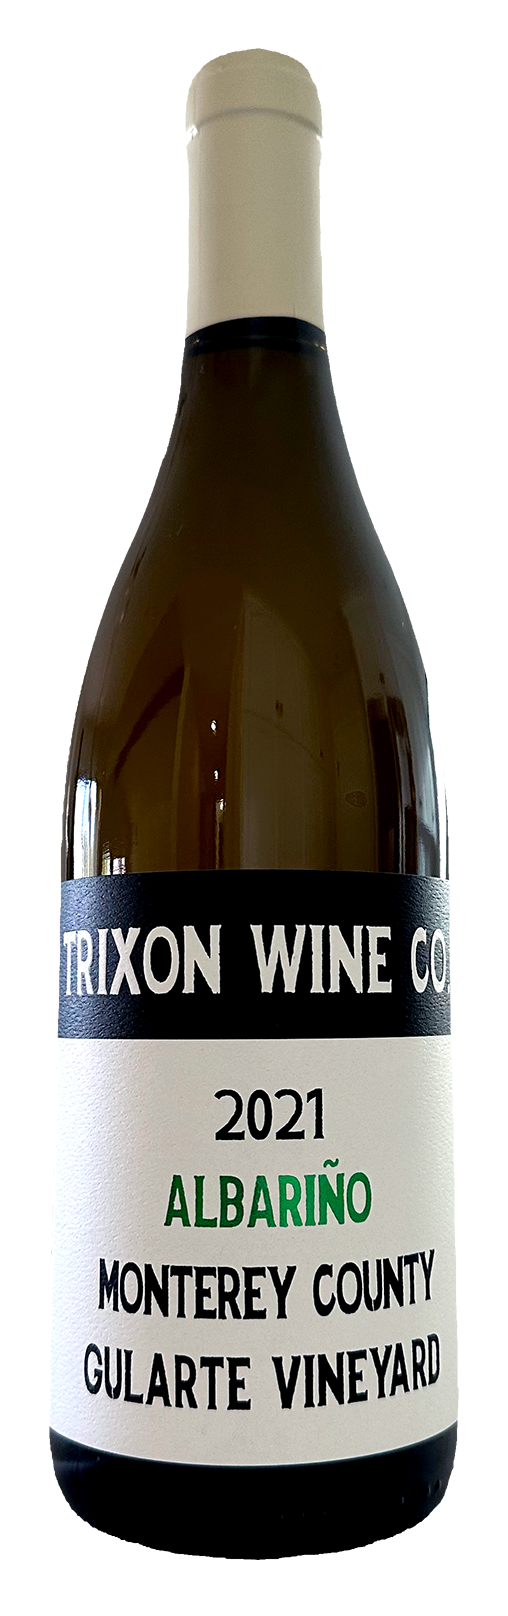 Trixon Wine Co. 2021 Albarino